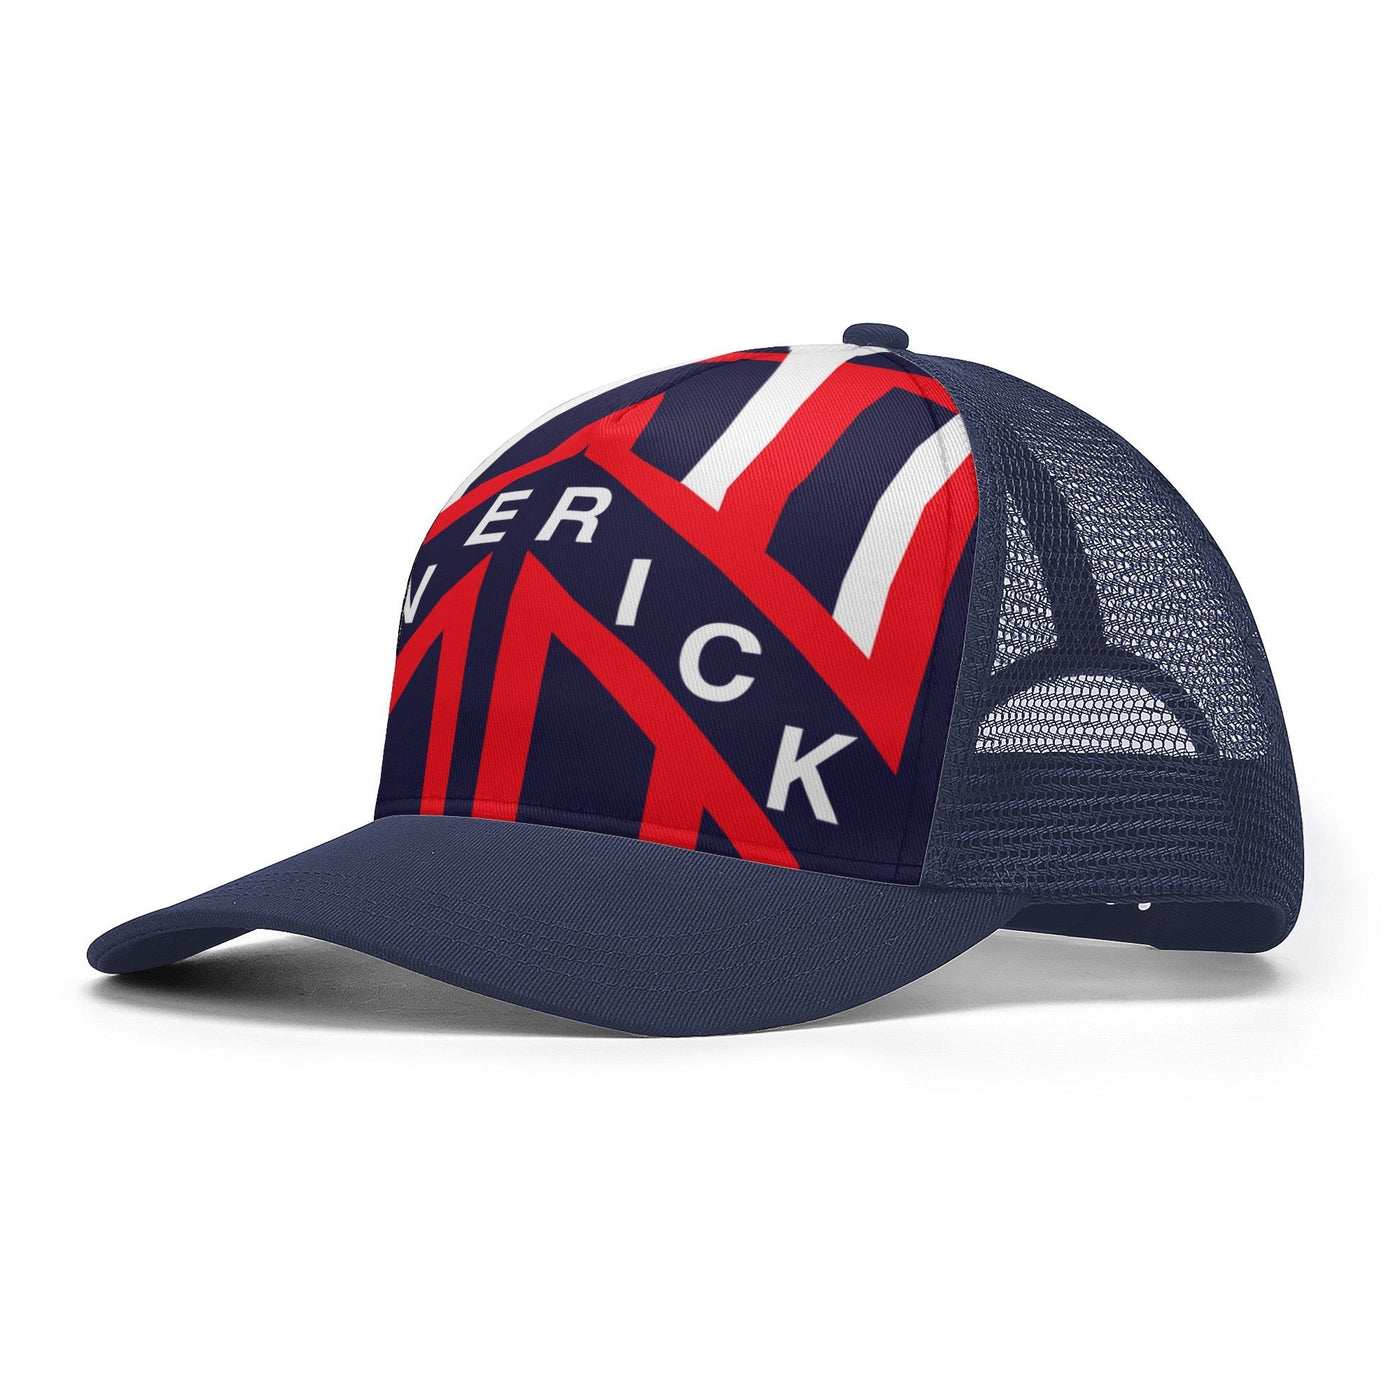 Maverick Trucker Hat with Top Gun Helmet Graphic